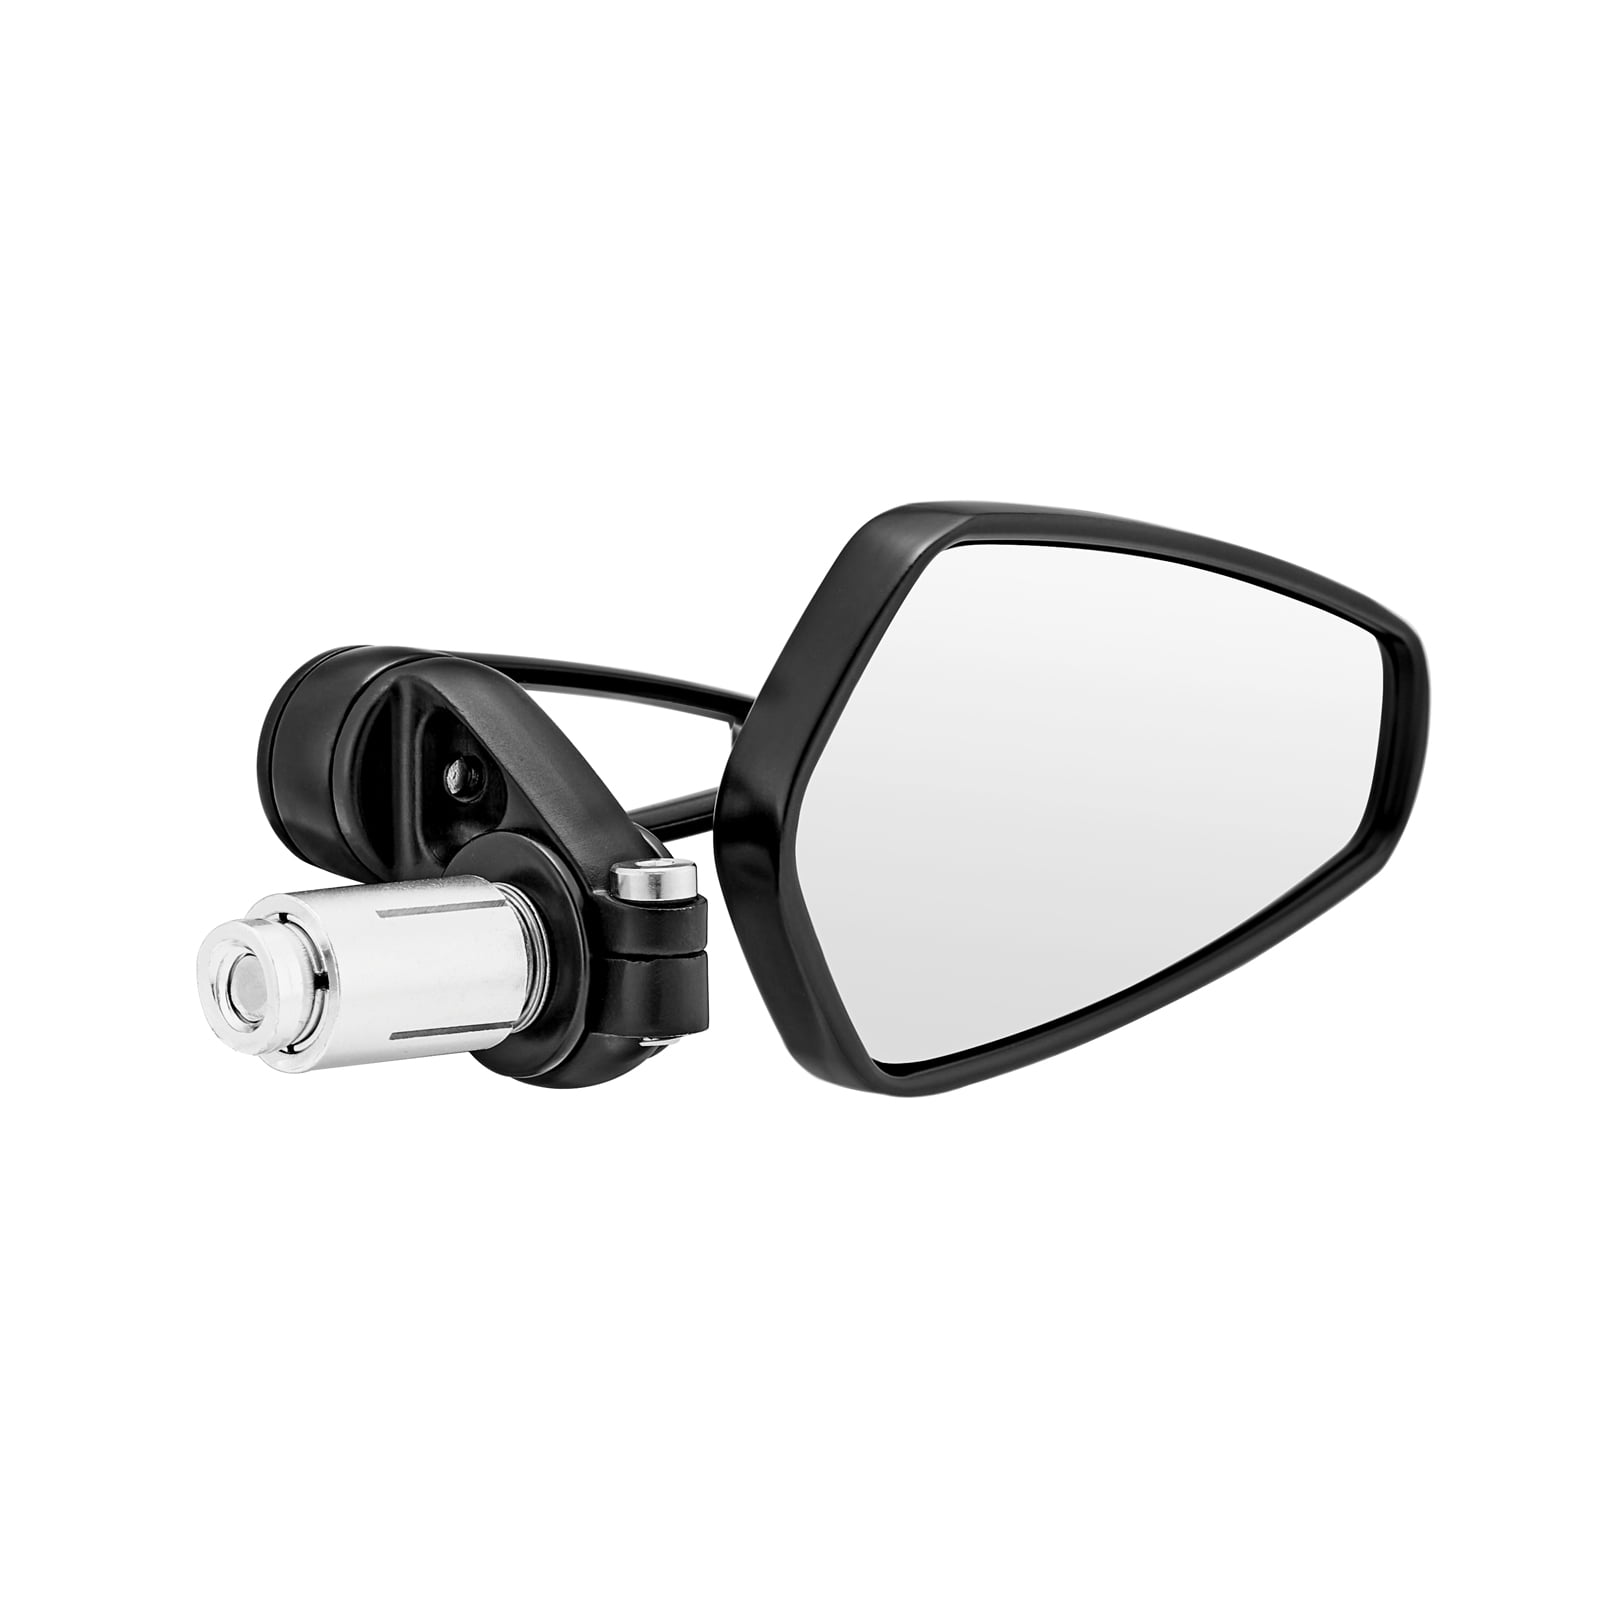 MICTUNING Motorcycle Mirrors - Bar End Rear View Mirrors Compatible with  Most Honda Grom, Yamaha, Kawasaki, Ducati, Suzuki and More